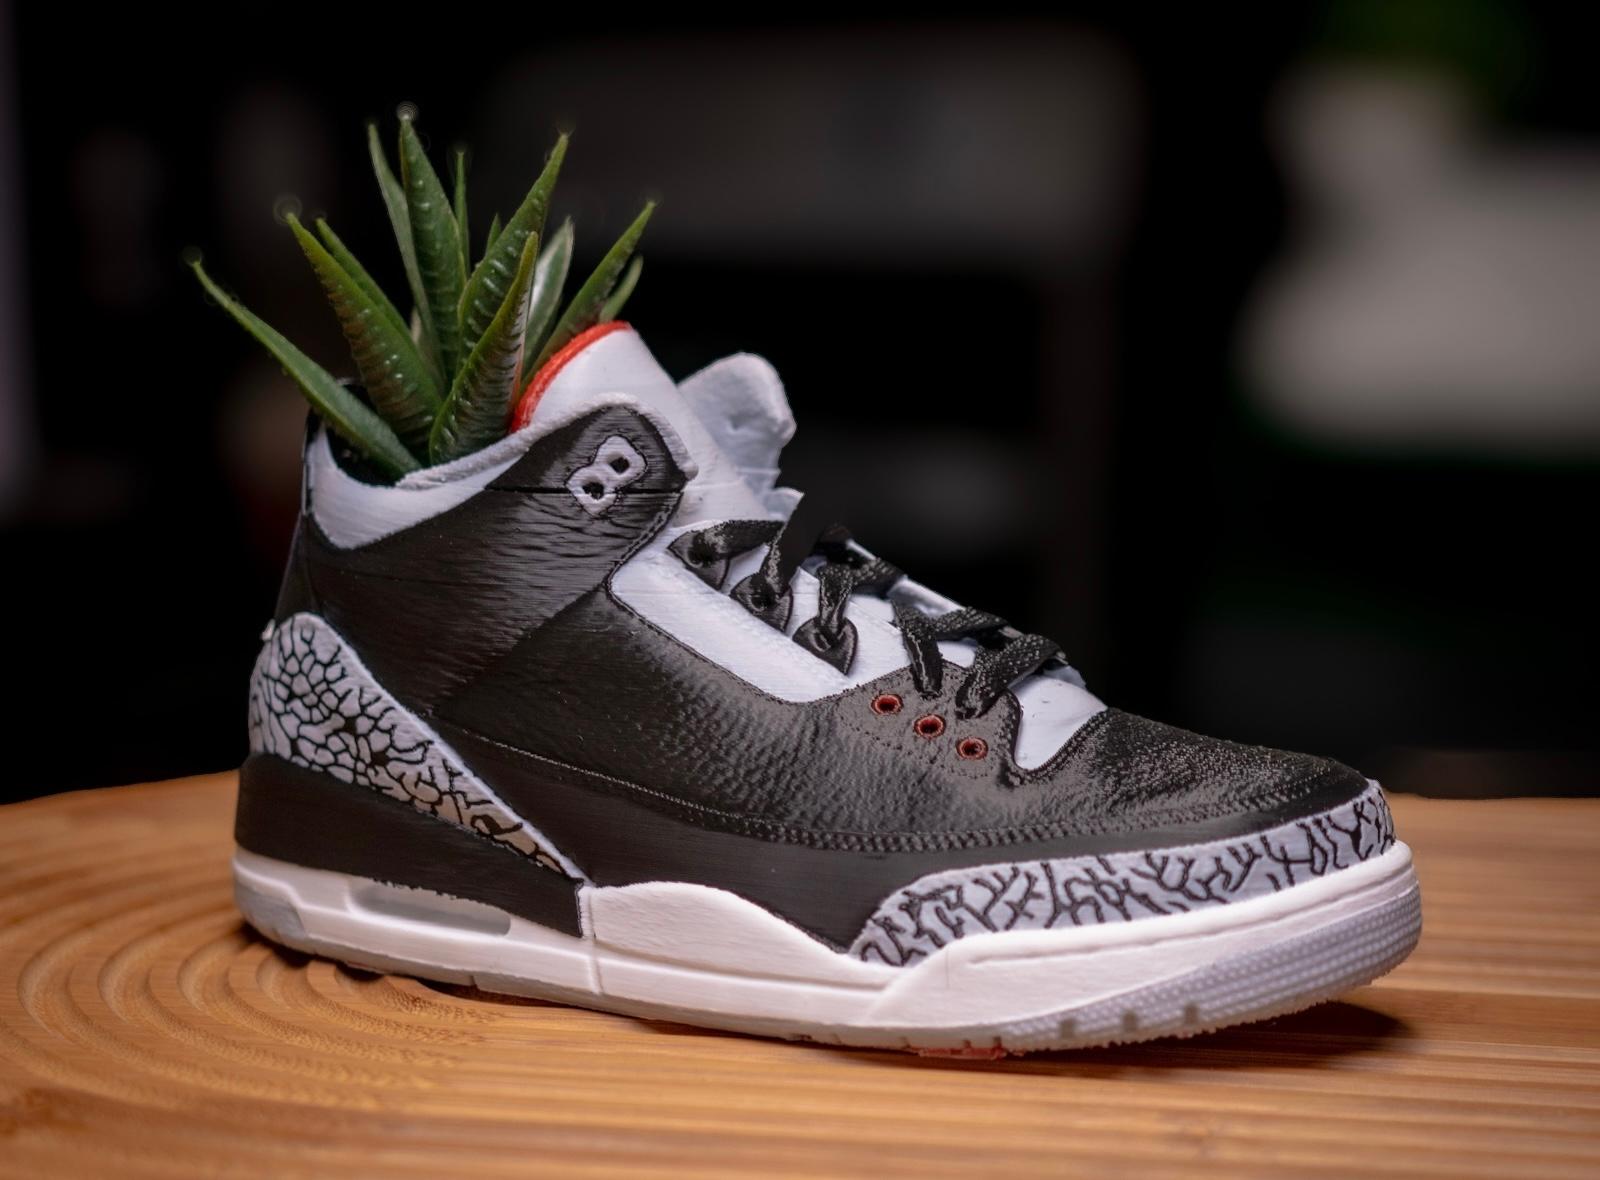 Jordan 3 Display/ Mini Sneaker Planter